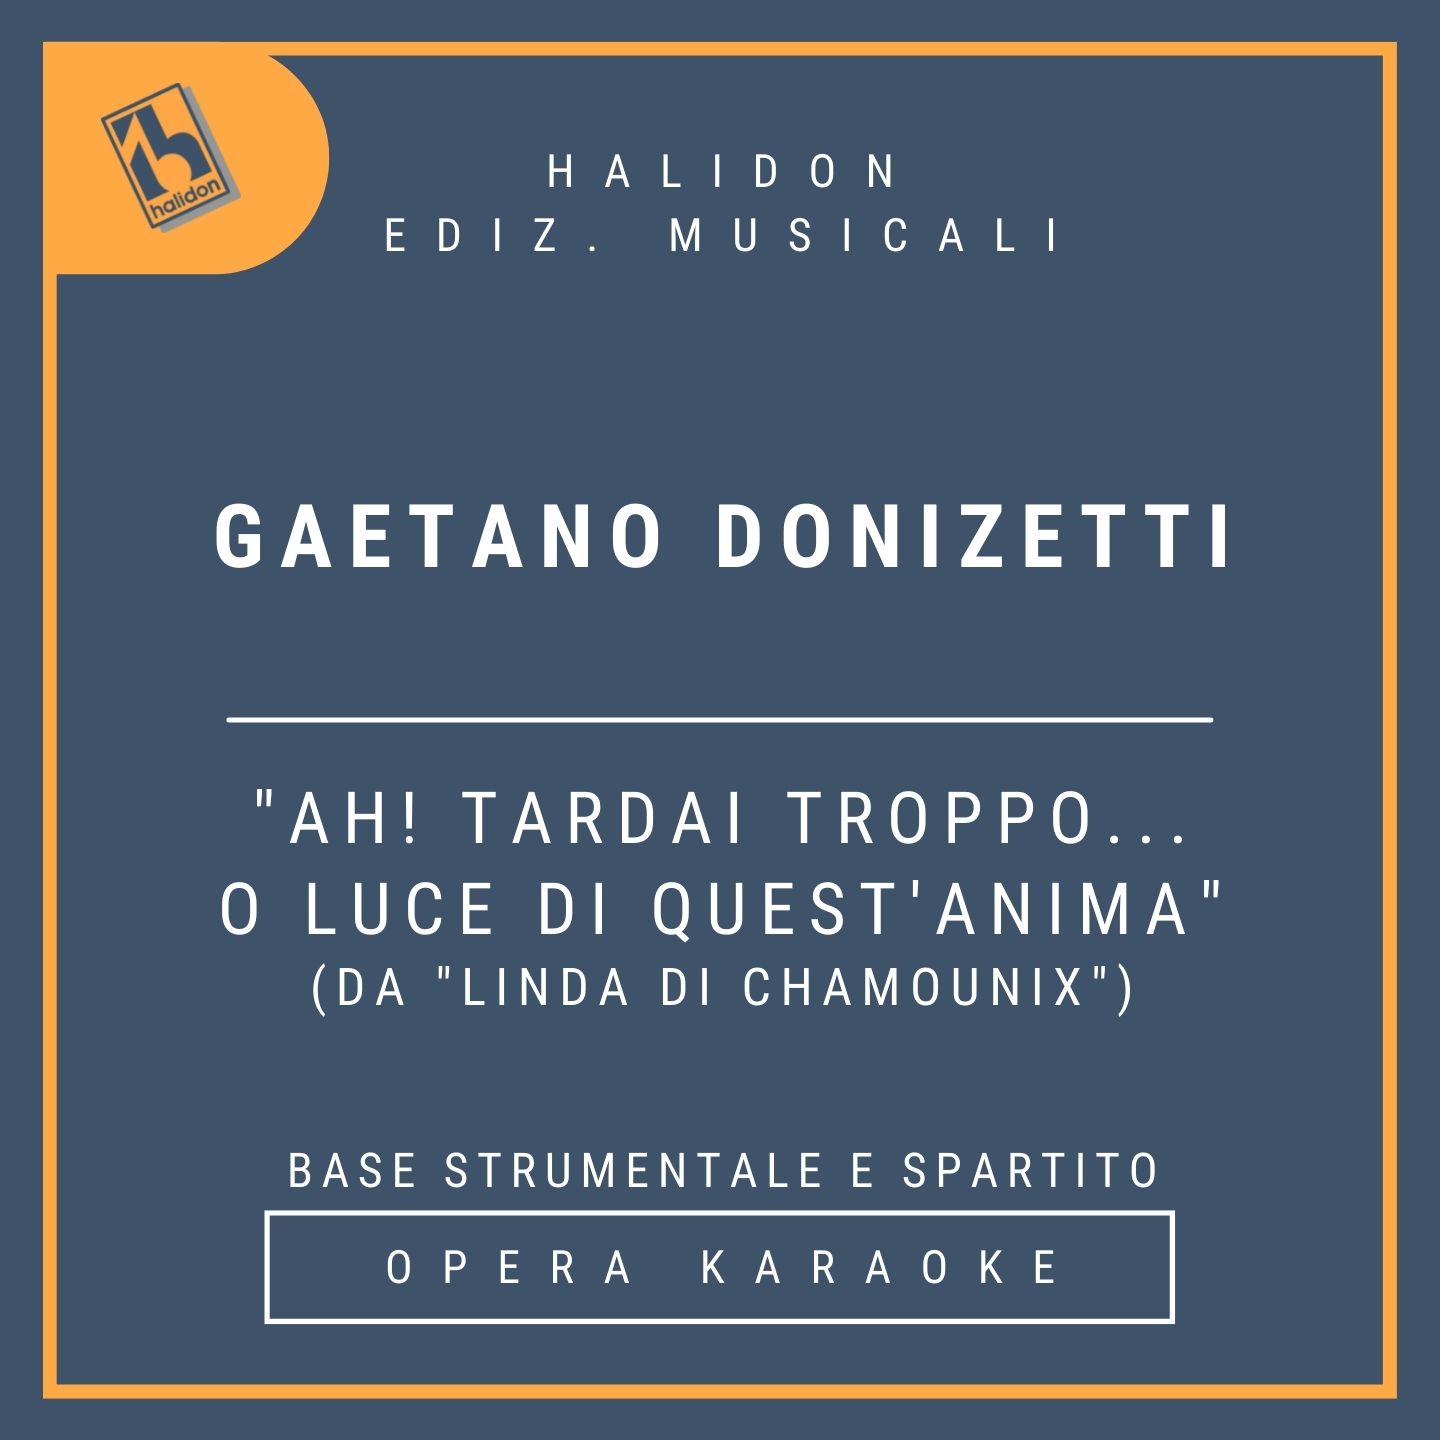 Gaetano Donizetti - Ah! tardai troppo... O Luce di quest'anima (da 'Linda di Chamounix') - Recitativo e cavatina di Linda (soprano leggero) - Base strumentale + spartito